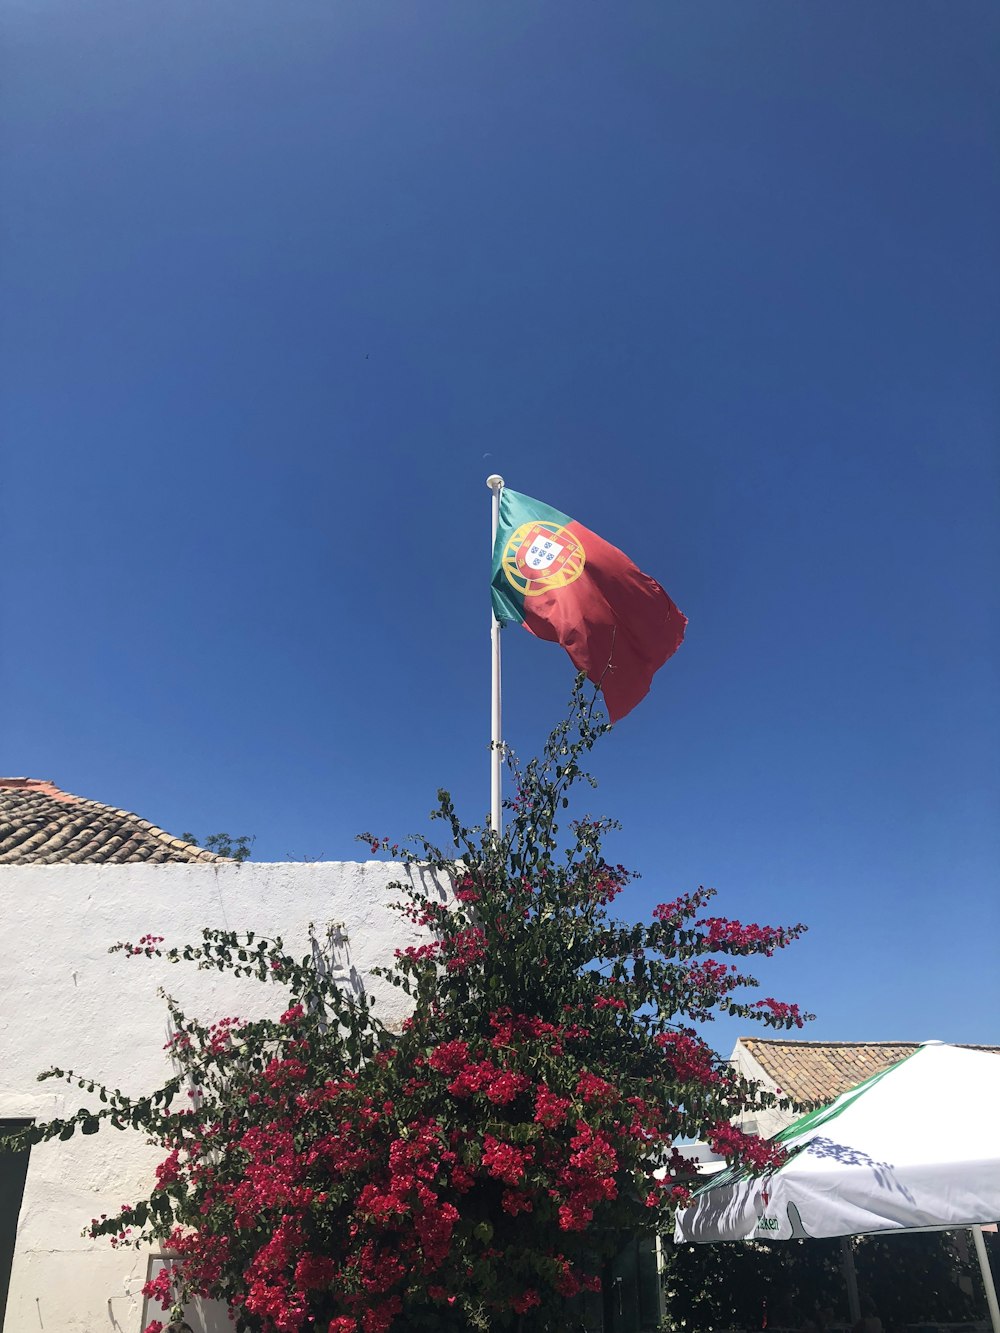 bandeira vermelha e branca na parede de concreto branca sob o céu azul durante o dia